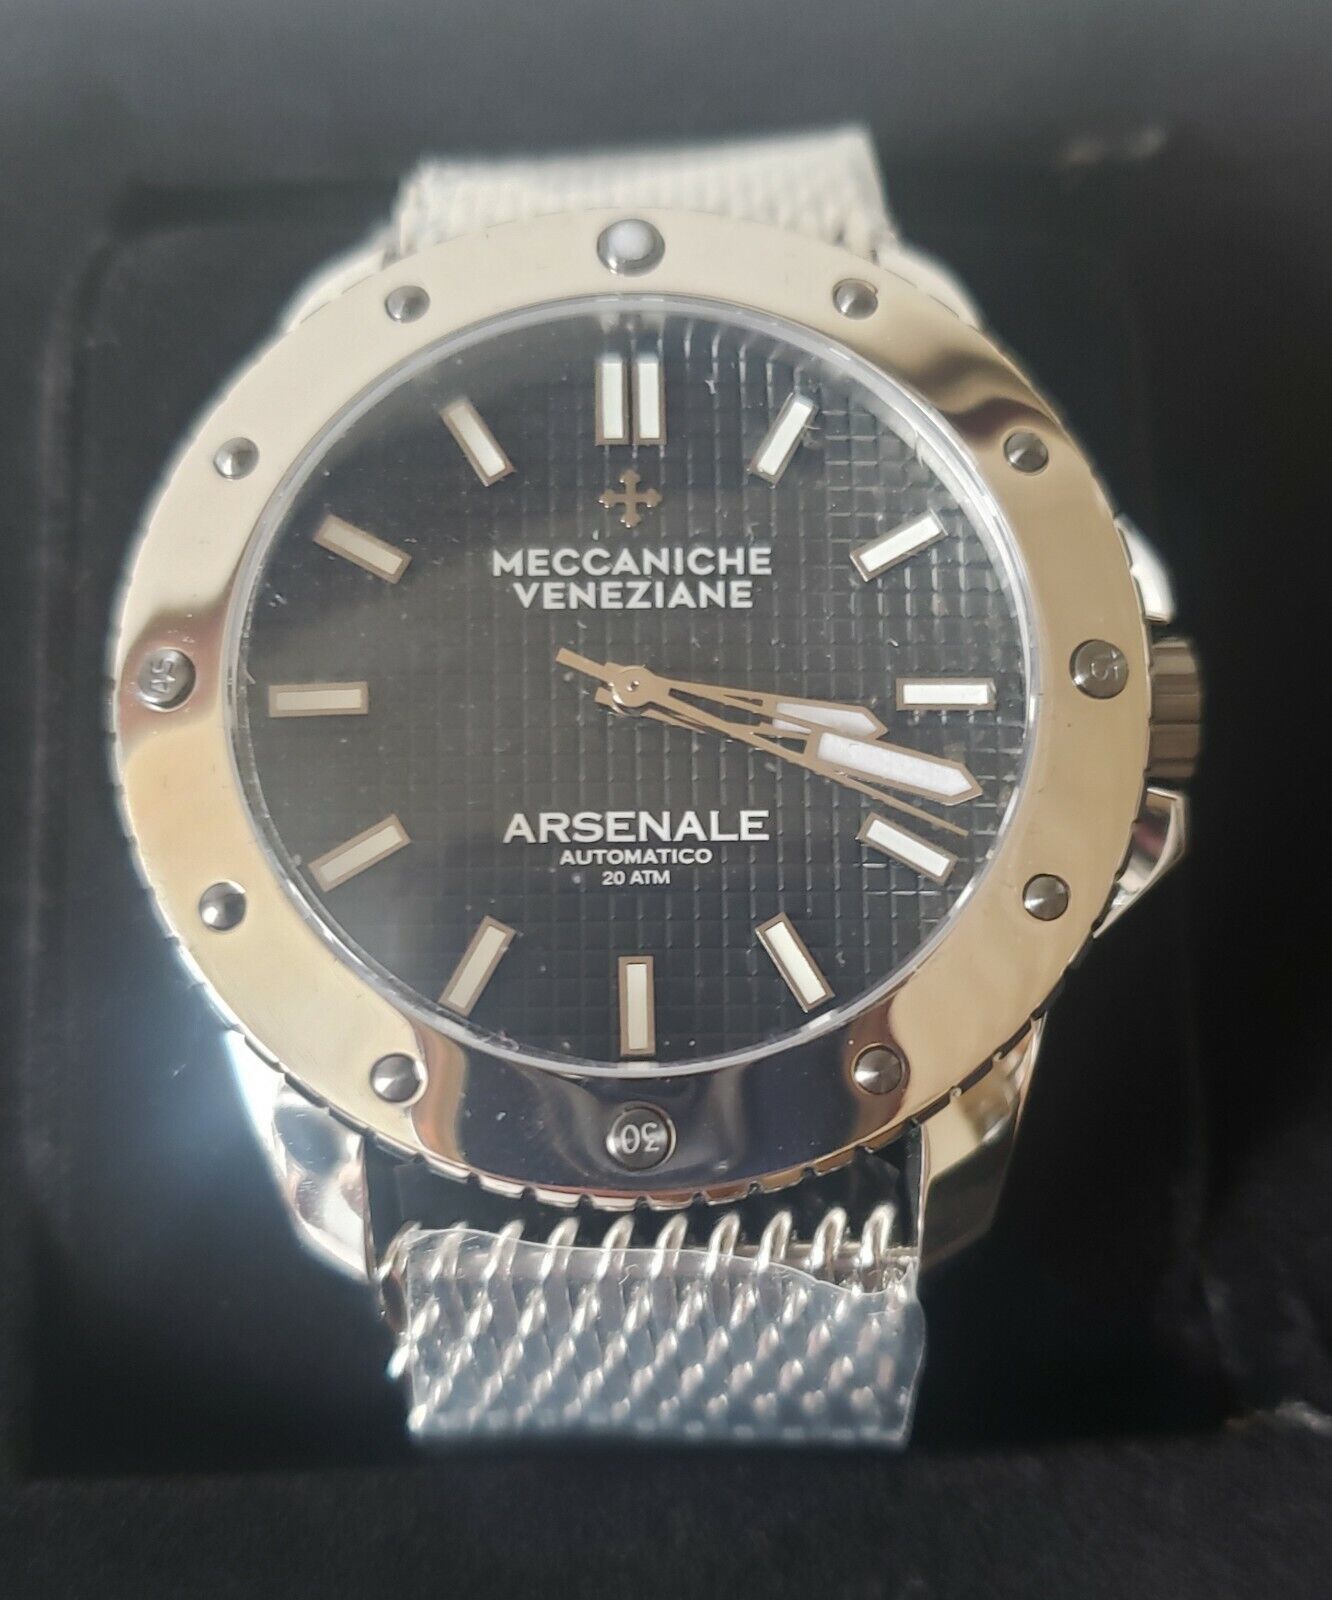 NEW Meccaniche Veneziane Arsenale Ltd 1303005A Automatic Watch Milanese Band